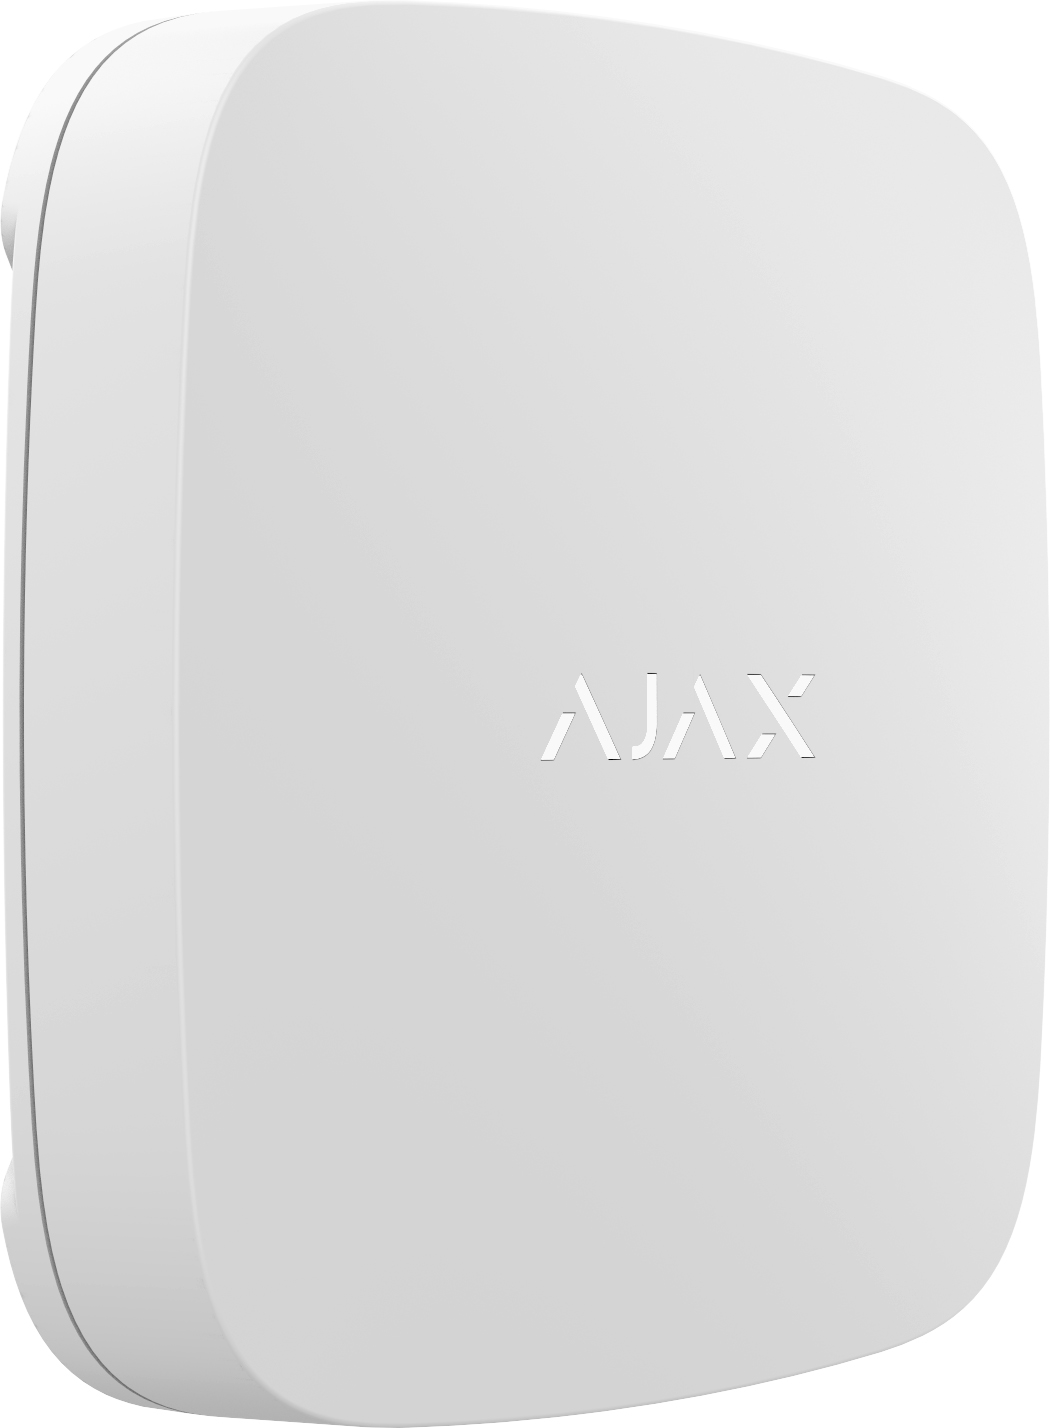 Ajax LeaksProtect vesivahti, valkoinen